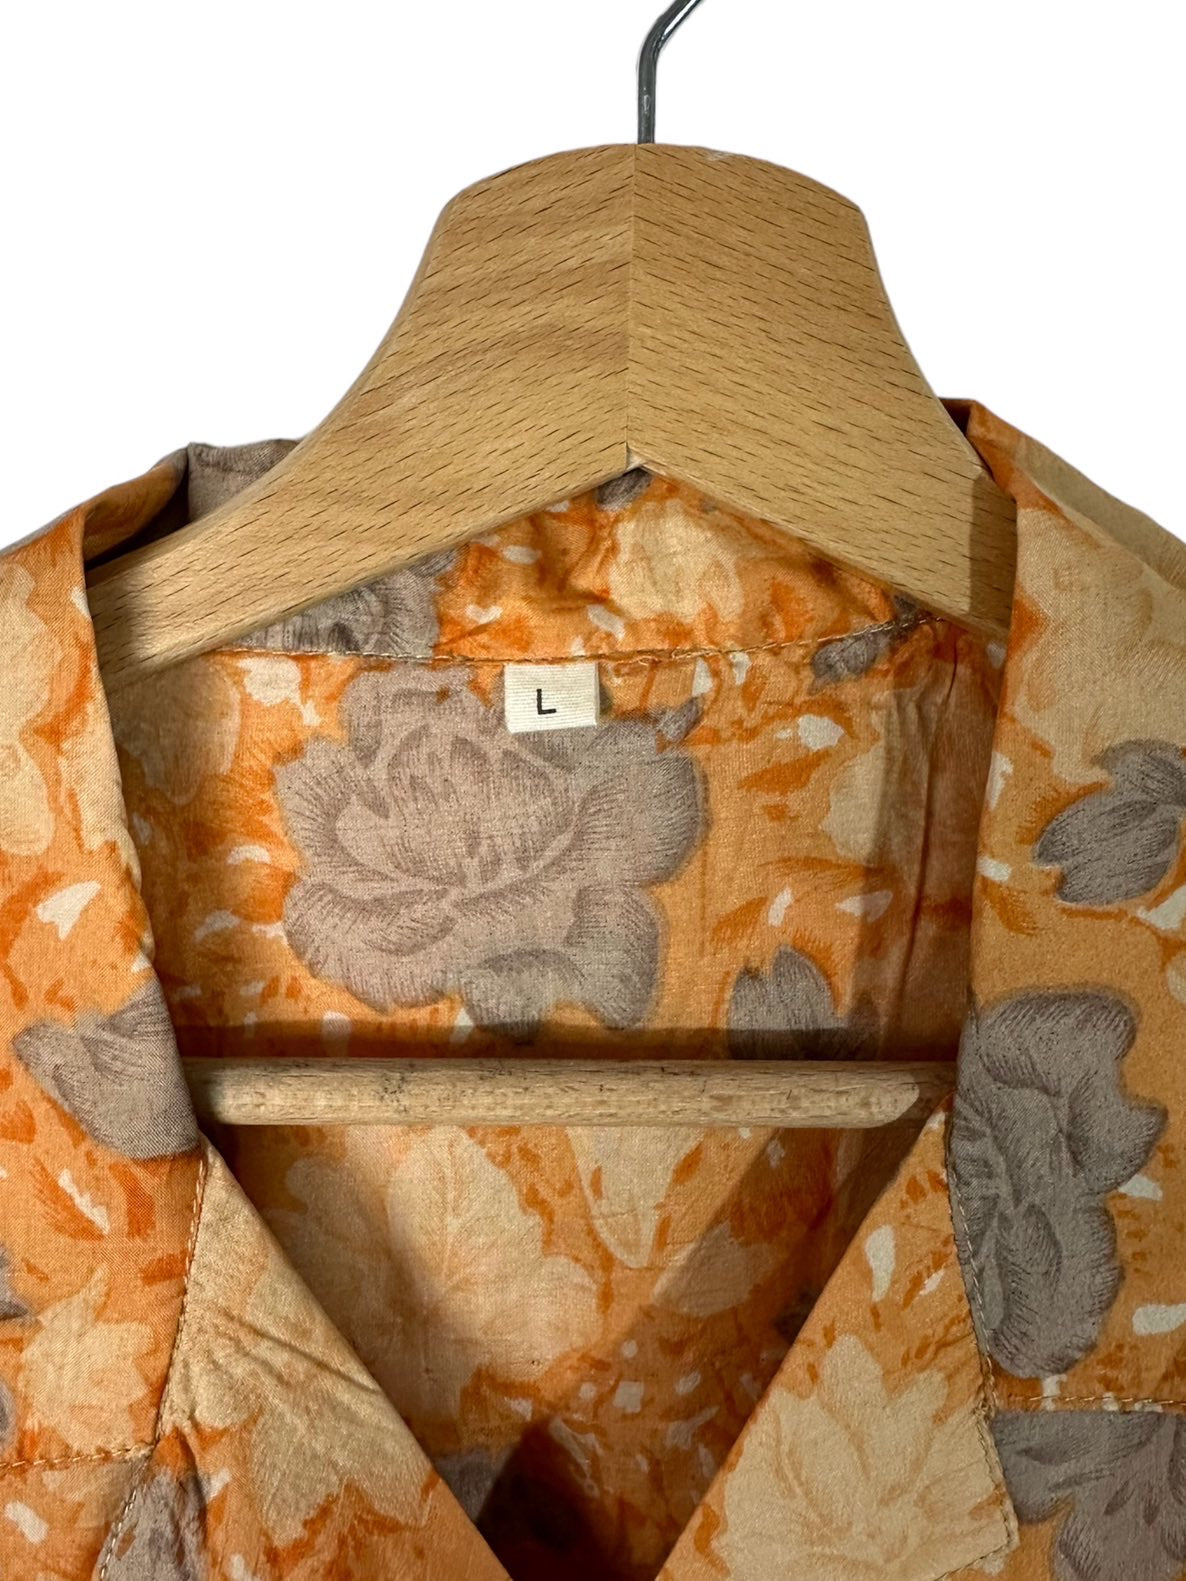 Flores de impressão de camisa de seda vintage (M)